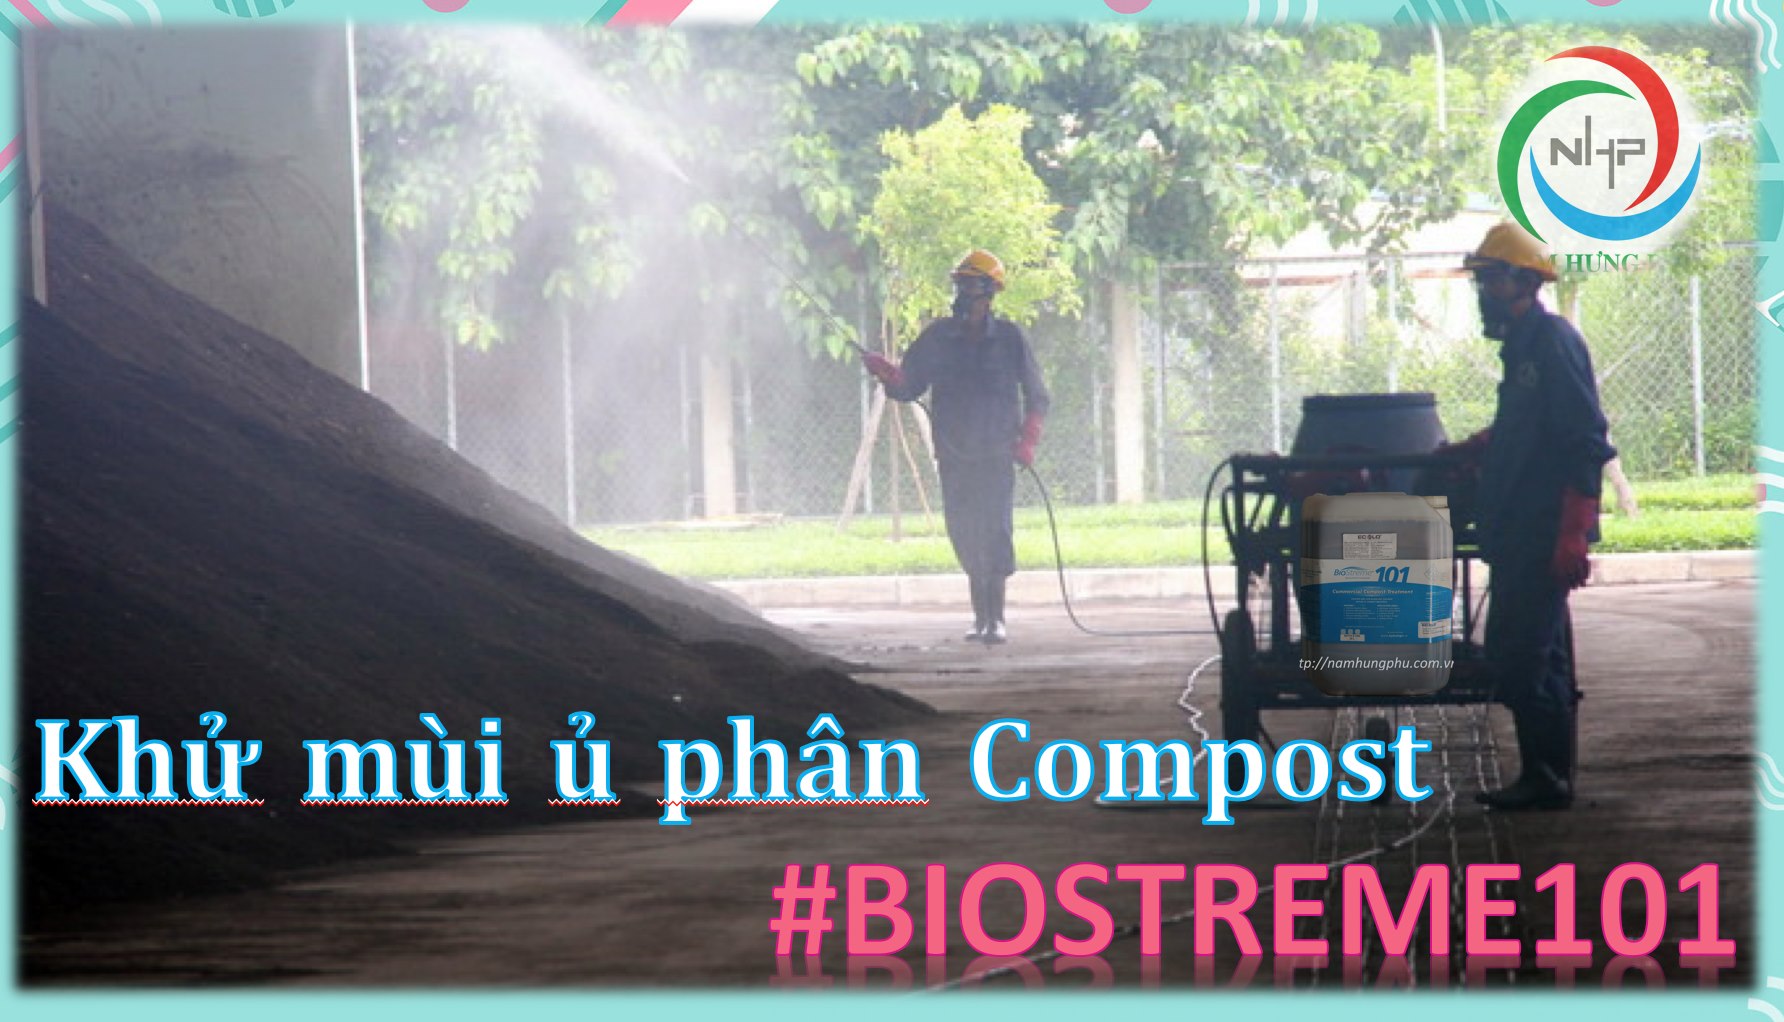 xử lý mùi hôi trong quá trình ủ phân compost Biostreme101